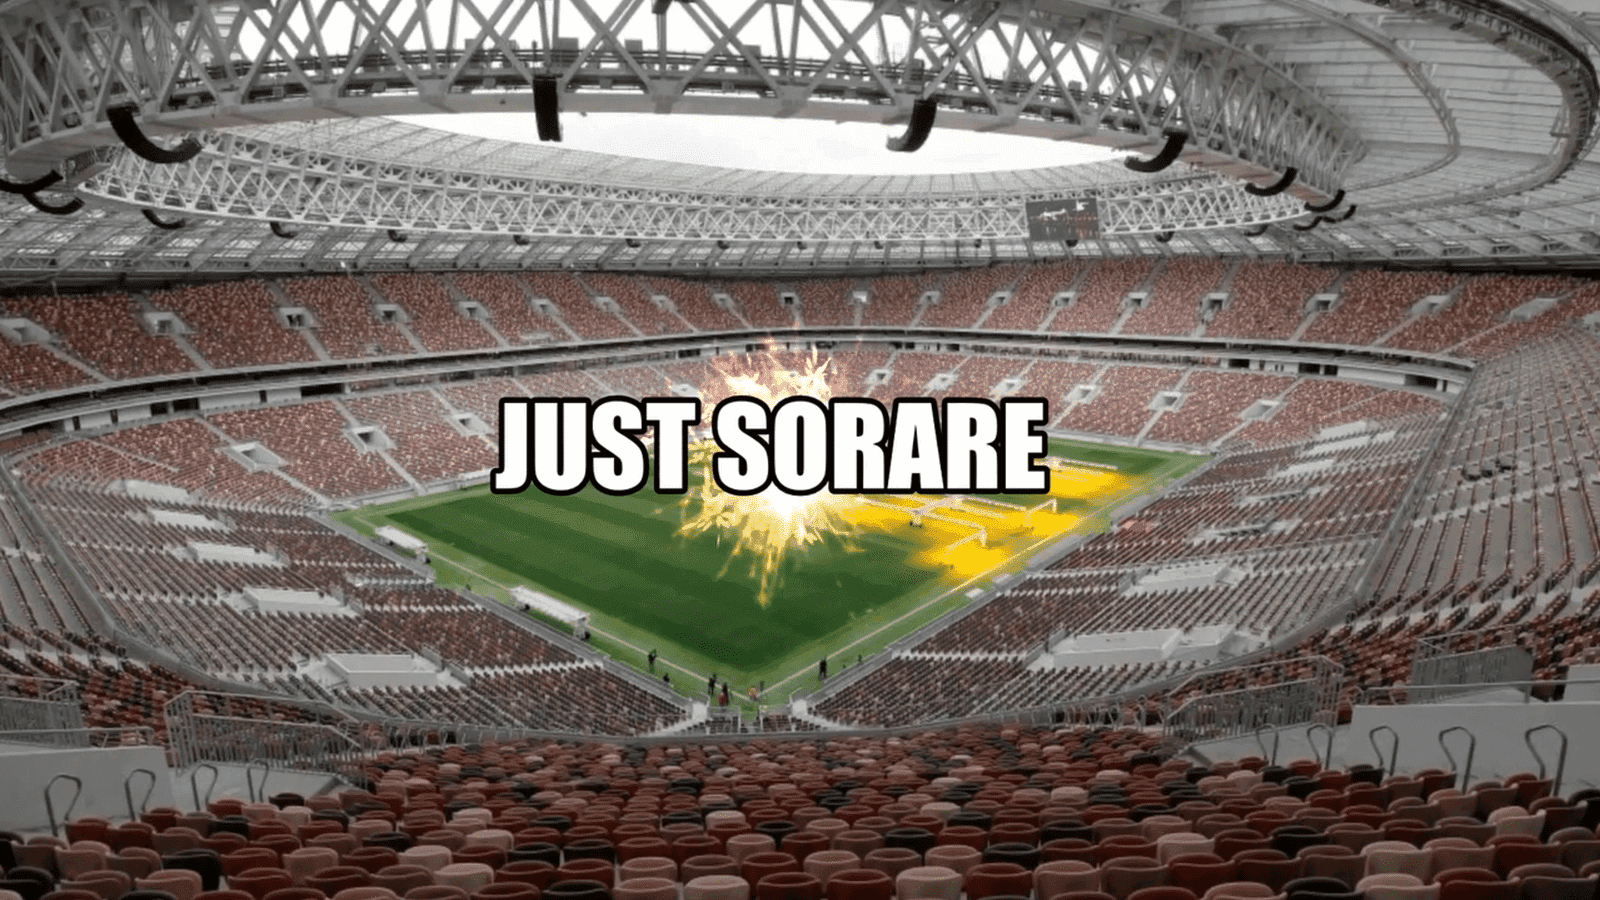 सोरारे एक क्रिप्टो-आधारित फंतासी फुटबॉल गेम है जो यथार्थवादी रूप से मनोरंजक और लाभदायक होने की क्षमता के कारण लोकप्रियता में वृद्धि हुई है।